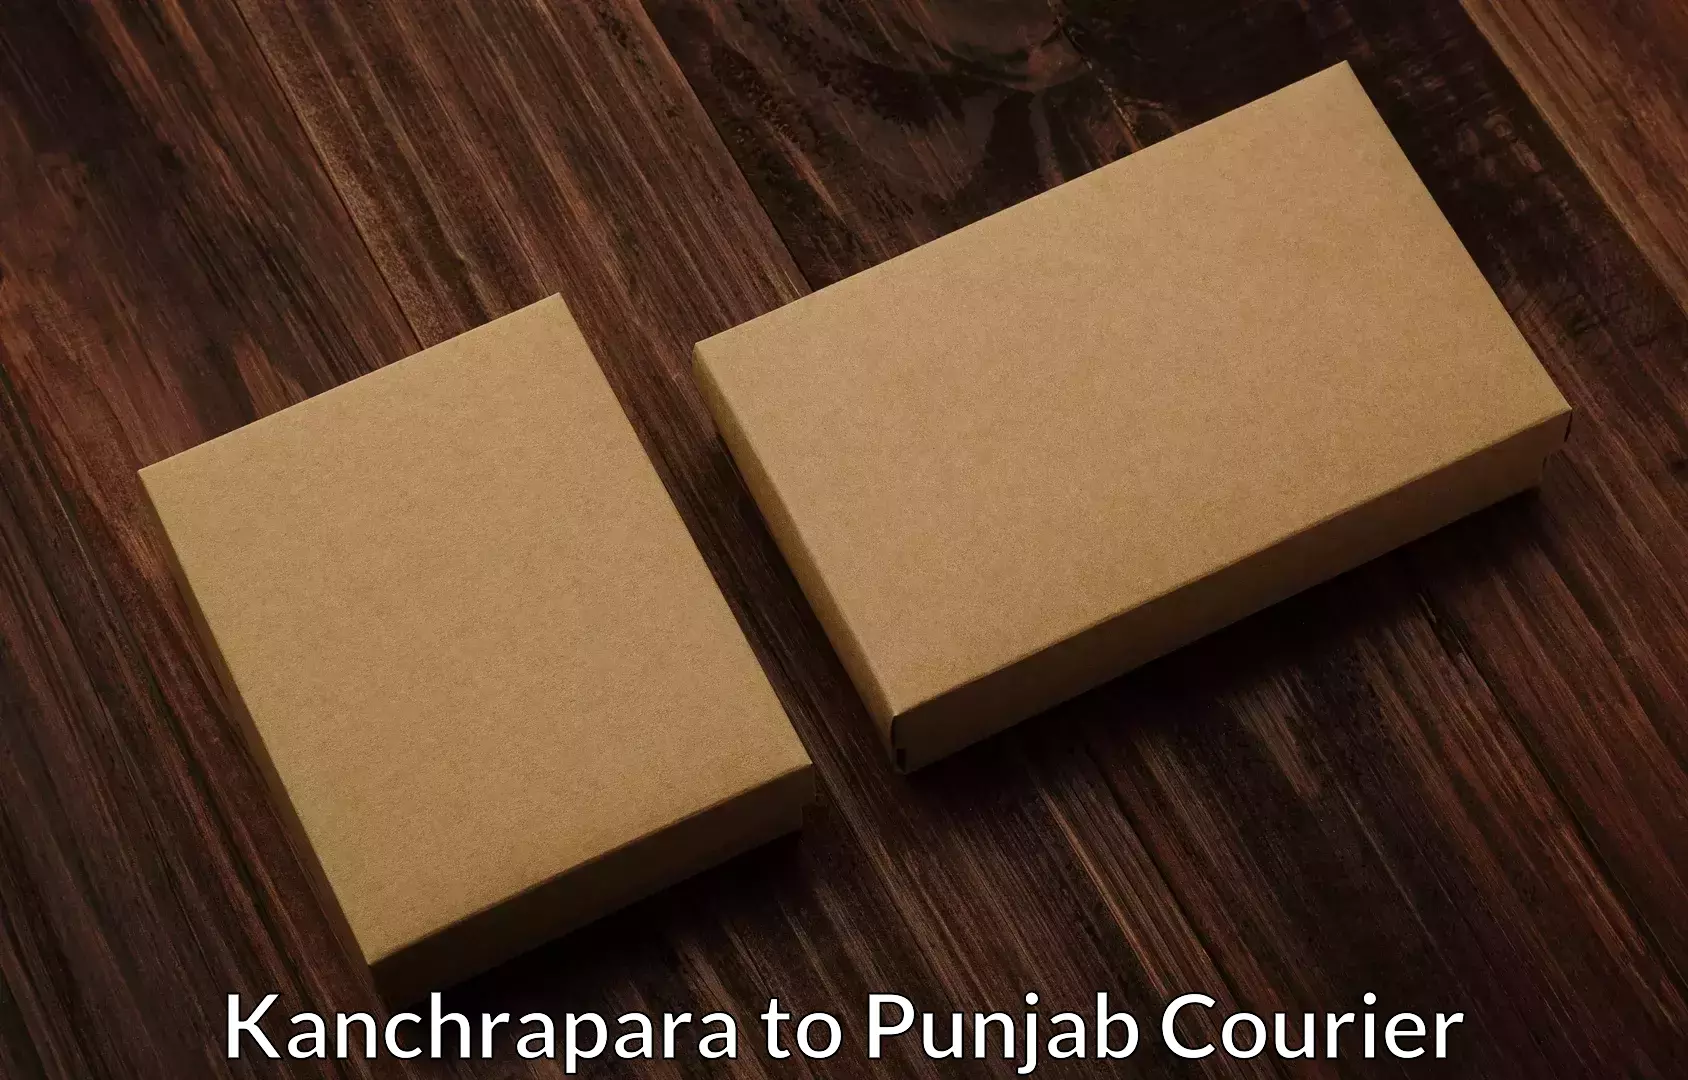 Quality moving company Kanchrapara to Giddarbaha